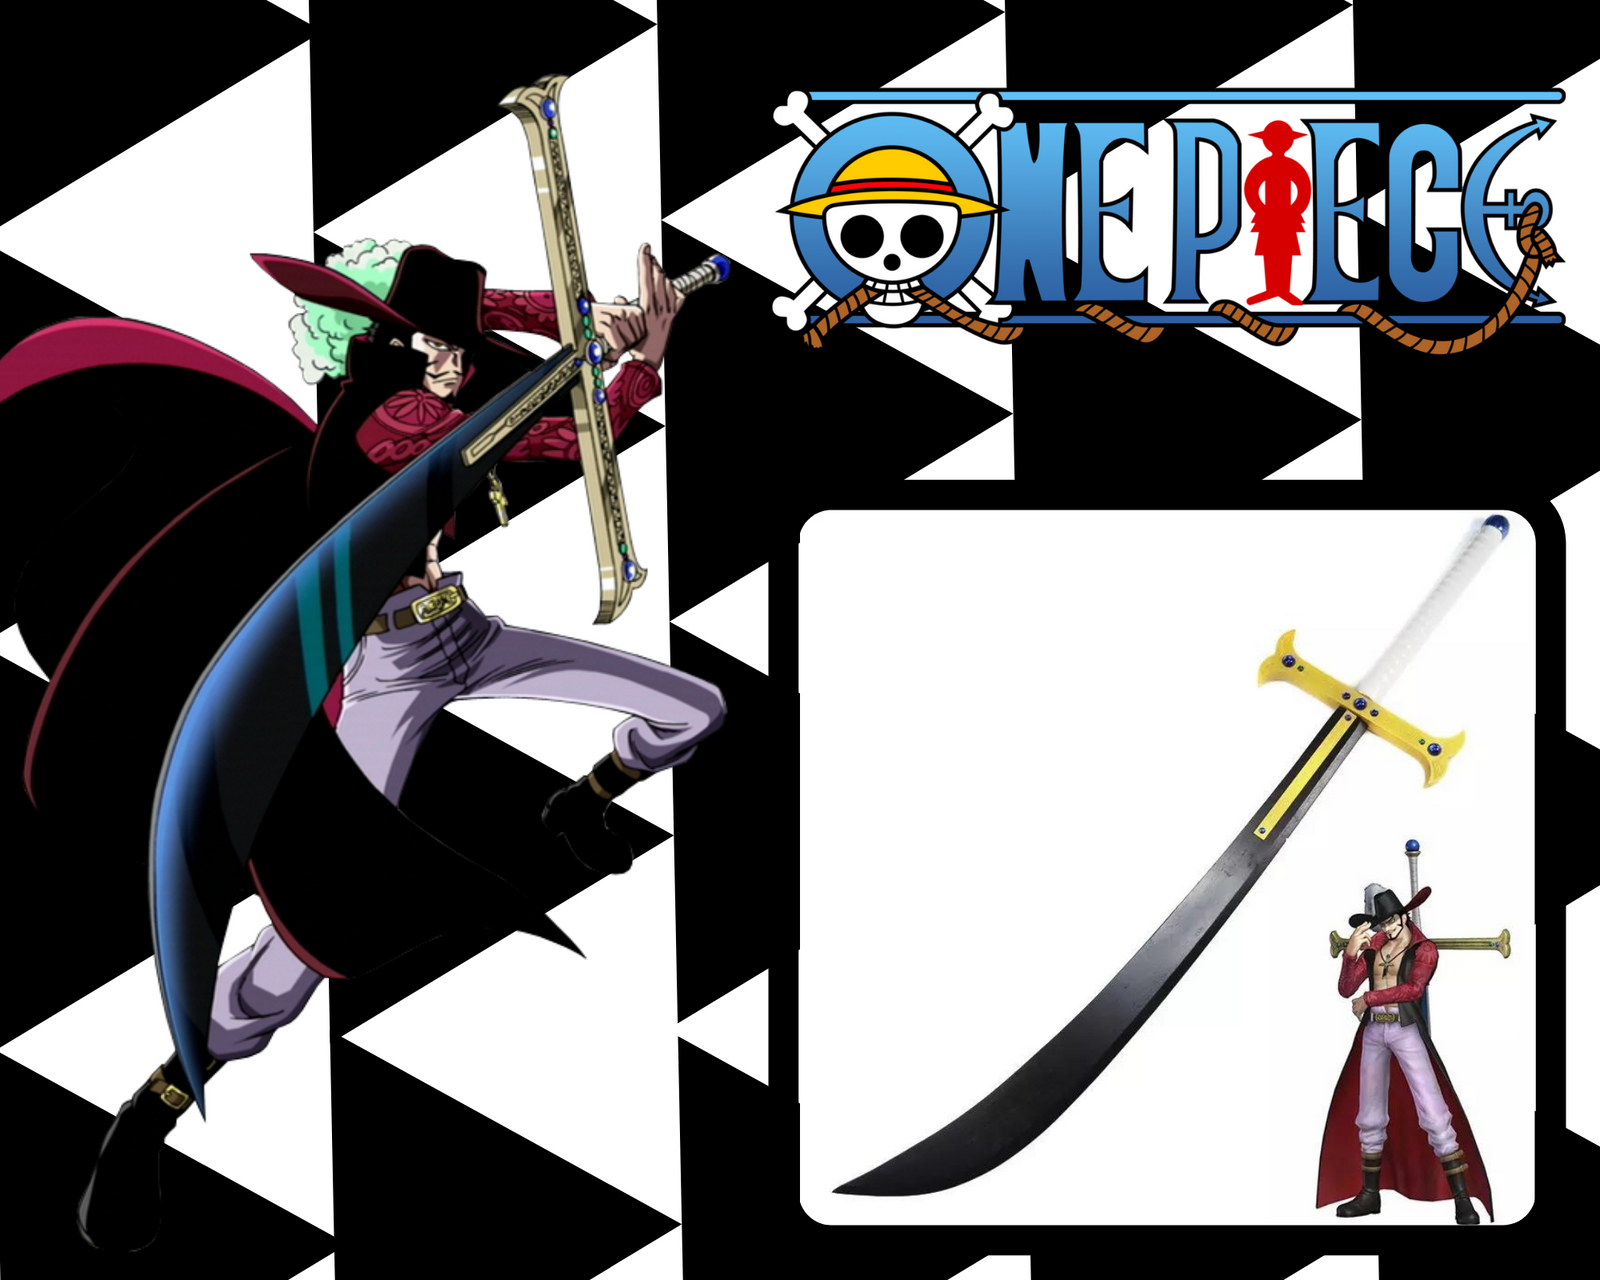 Réplica Espada One Piece: Dracule Mihawk Yoru Sword